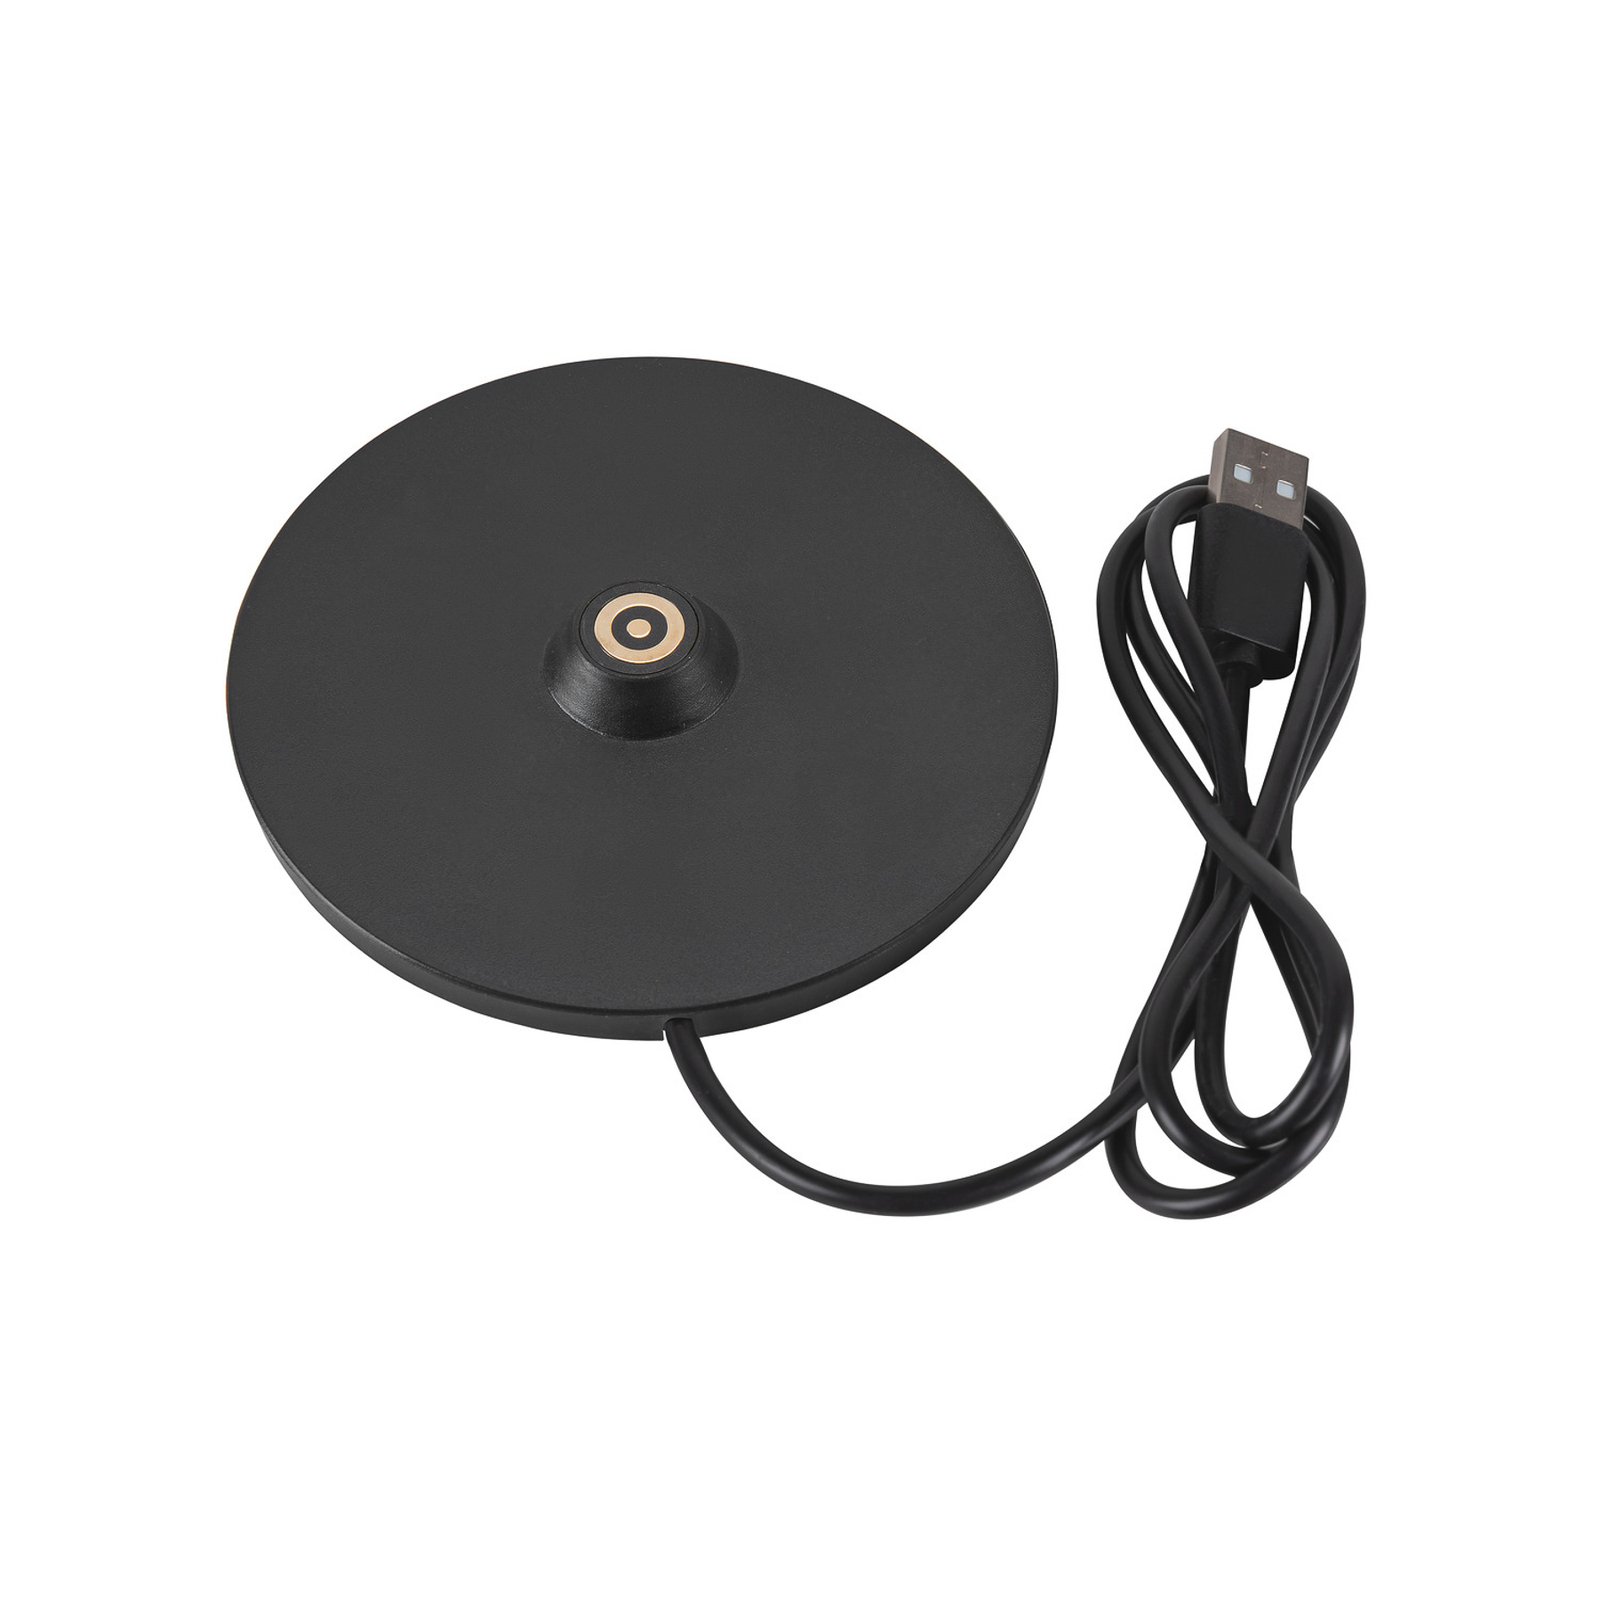 SLV LED rechargeable lamp Vinolina One, black, 2,700 K, height 33 cm